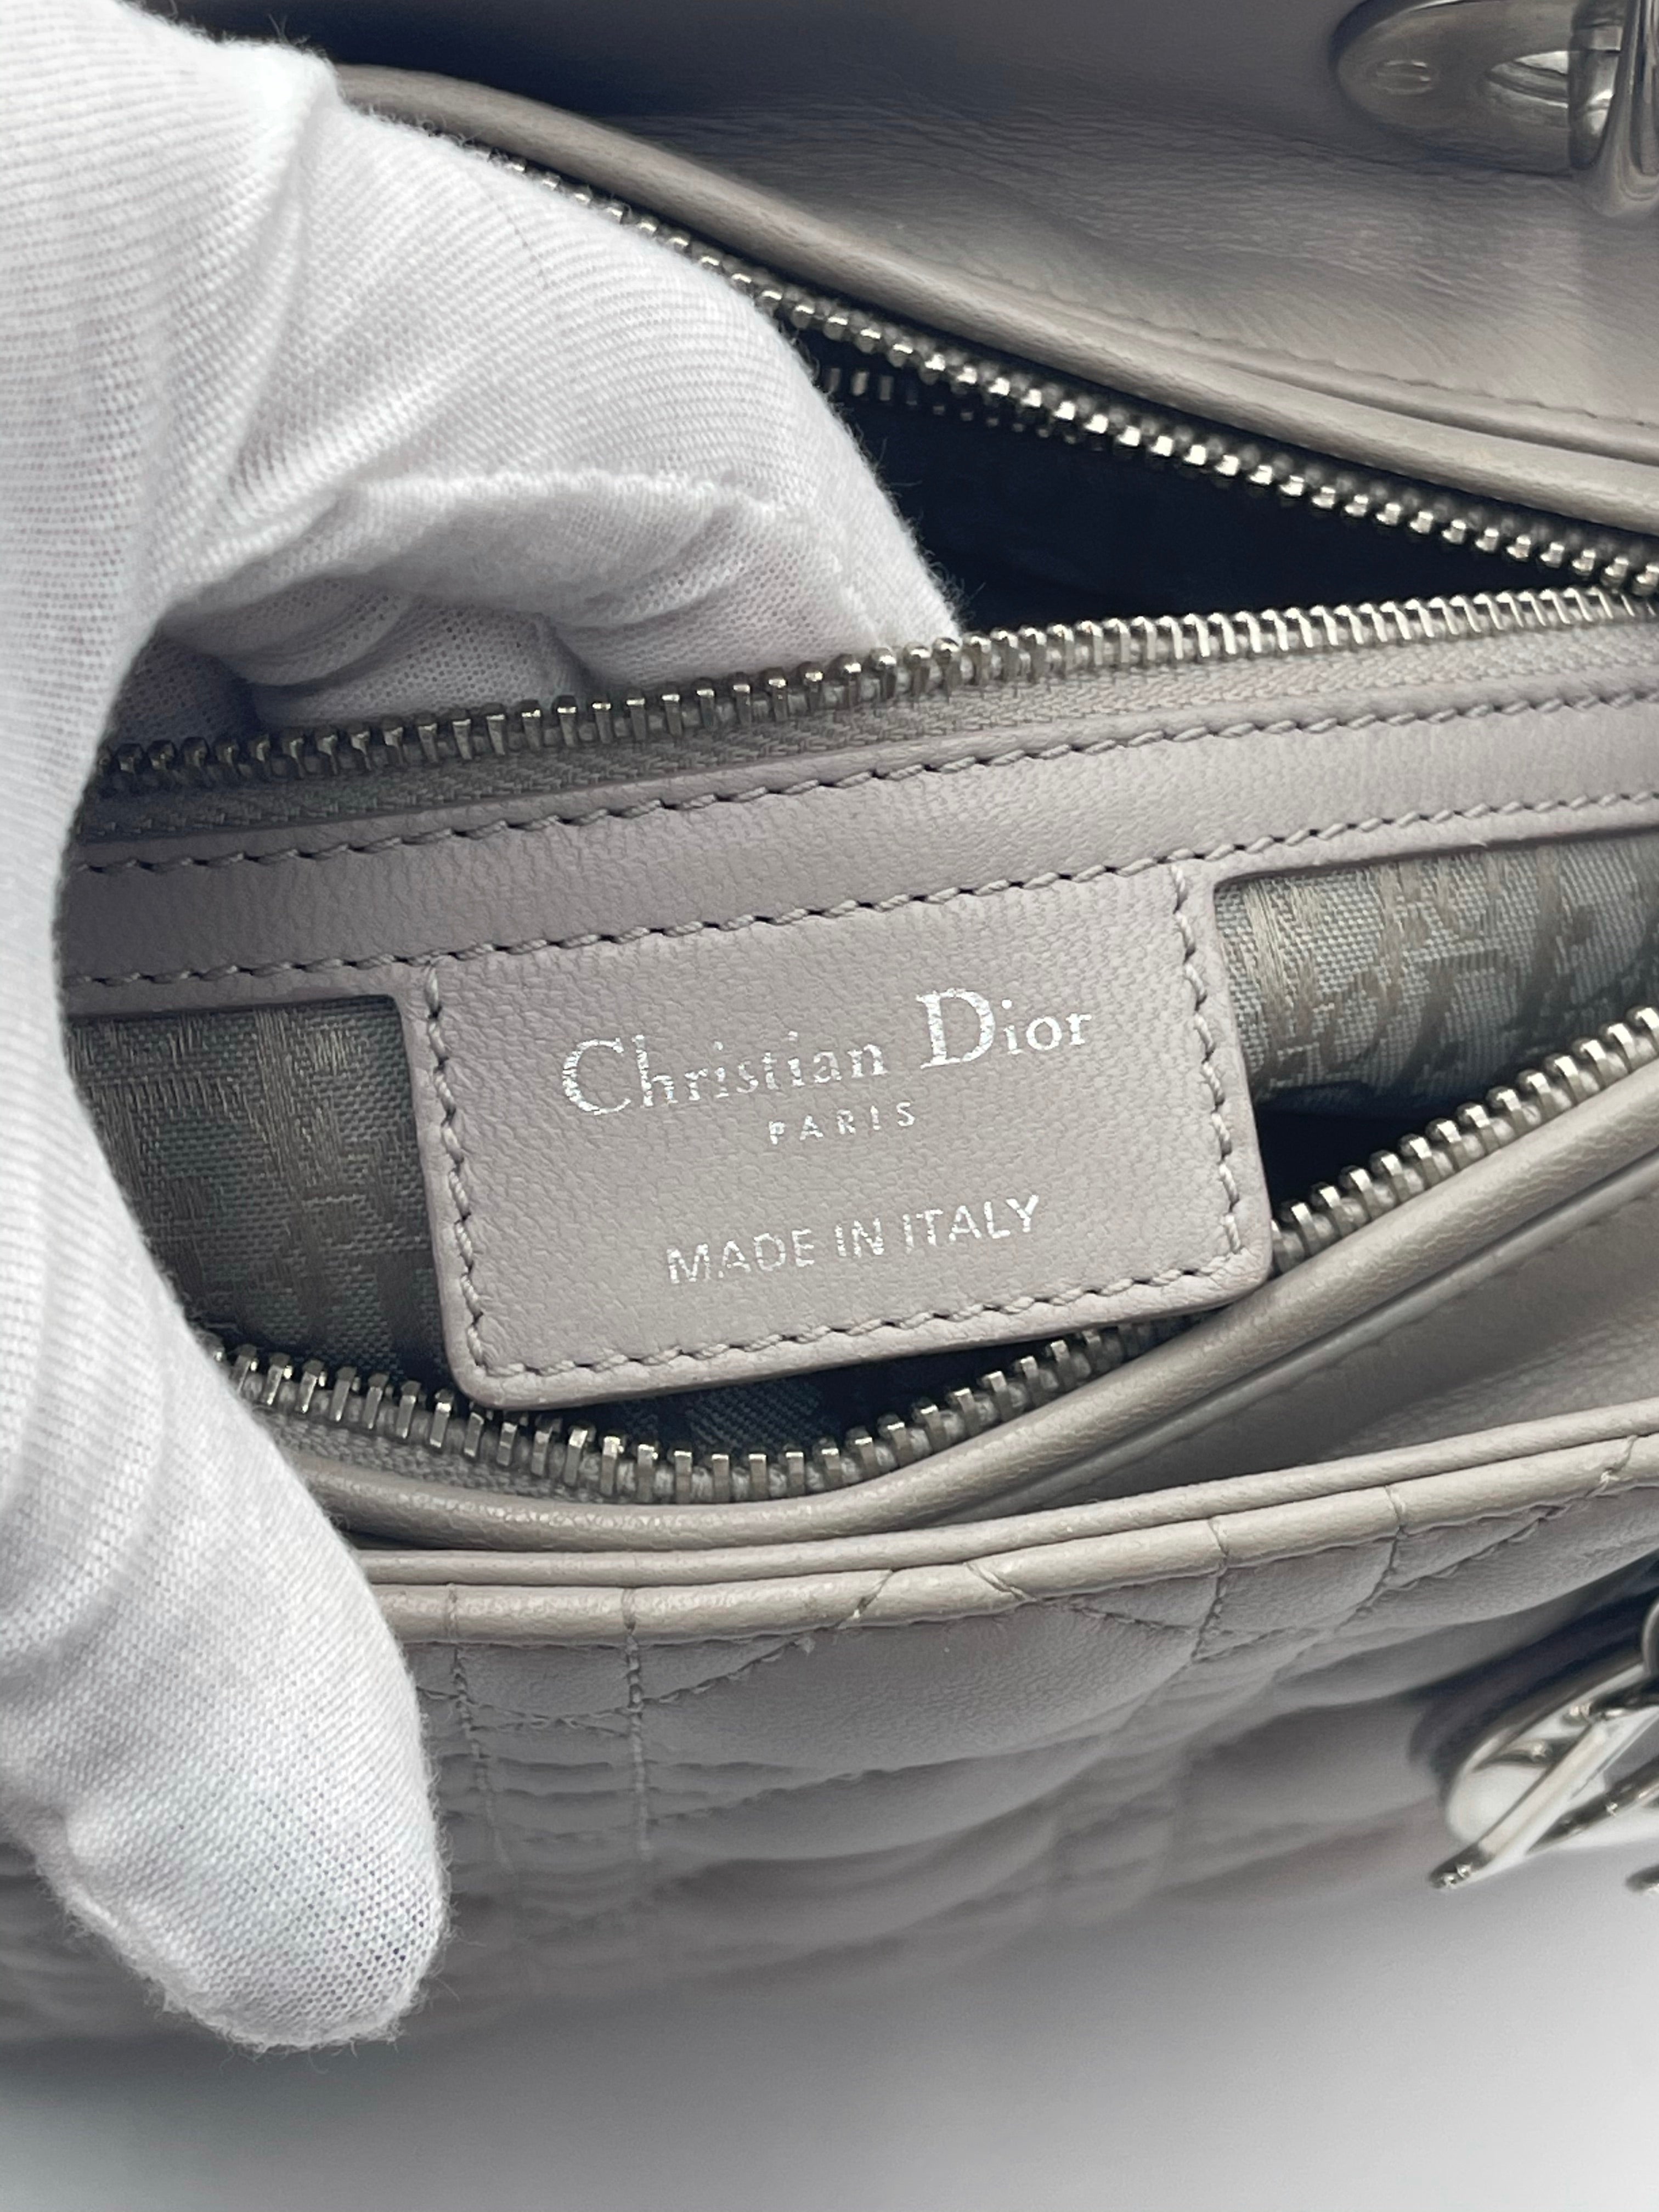 Christian Dior Lady Dior